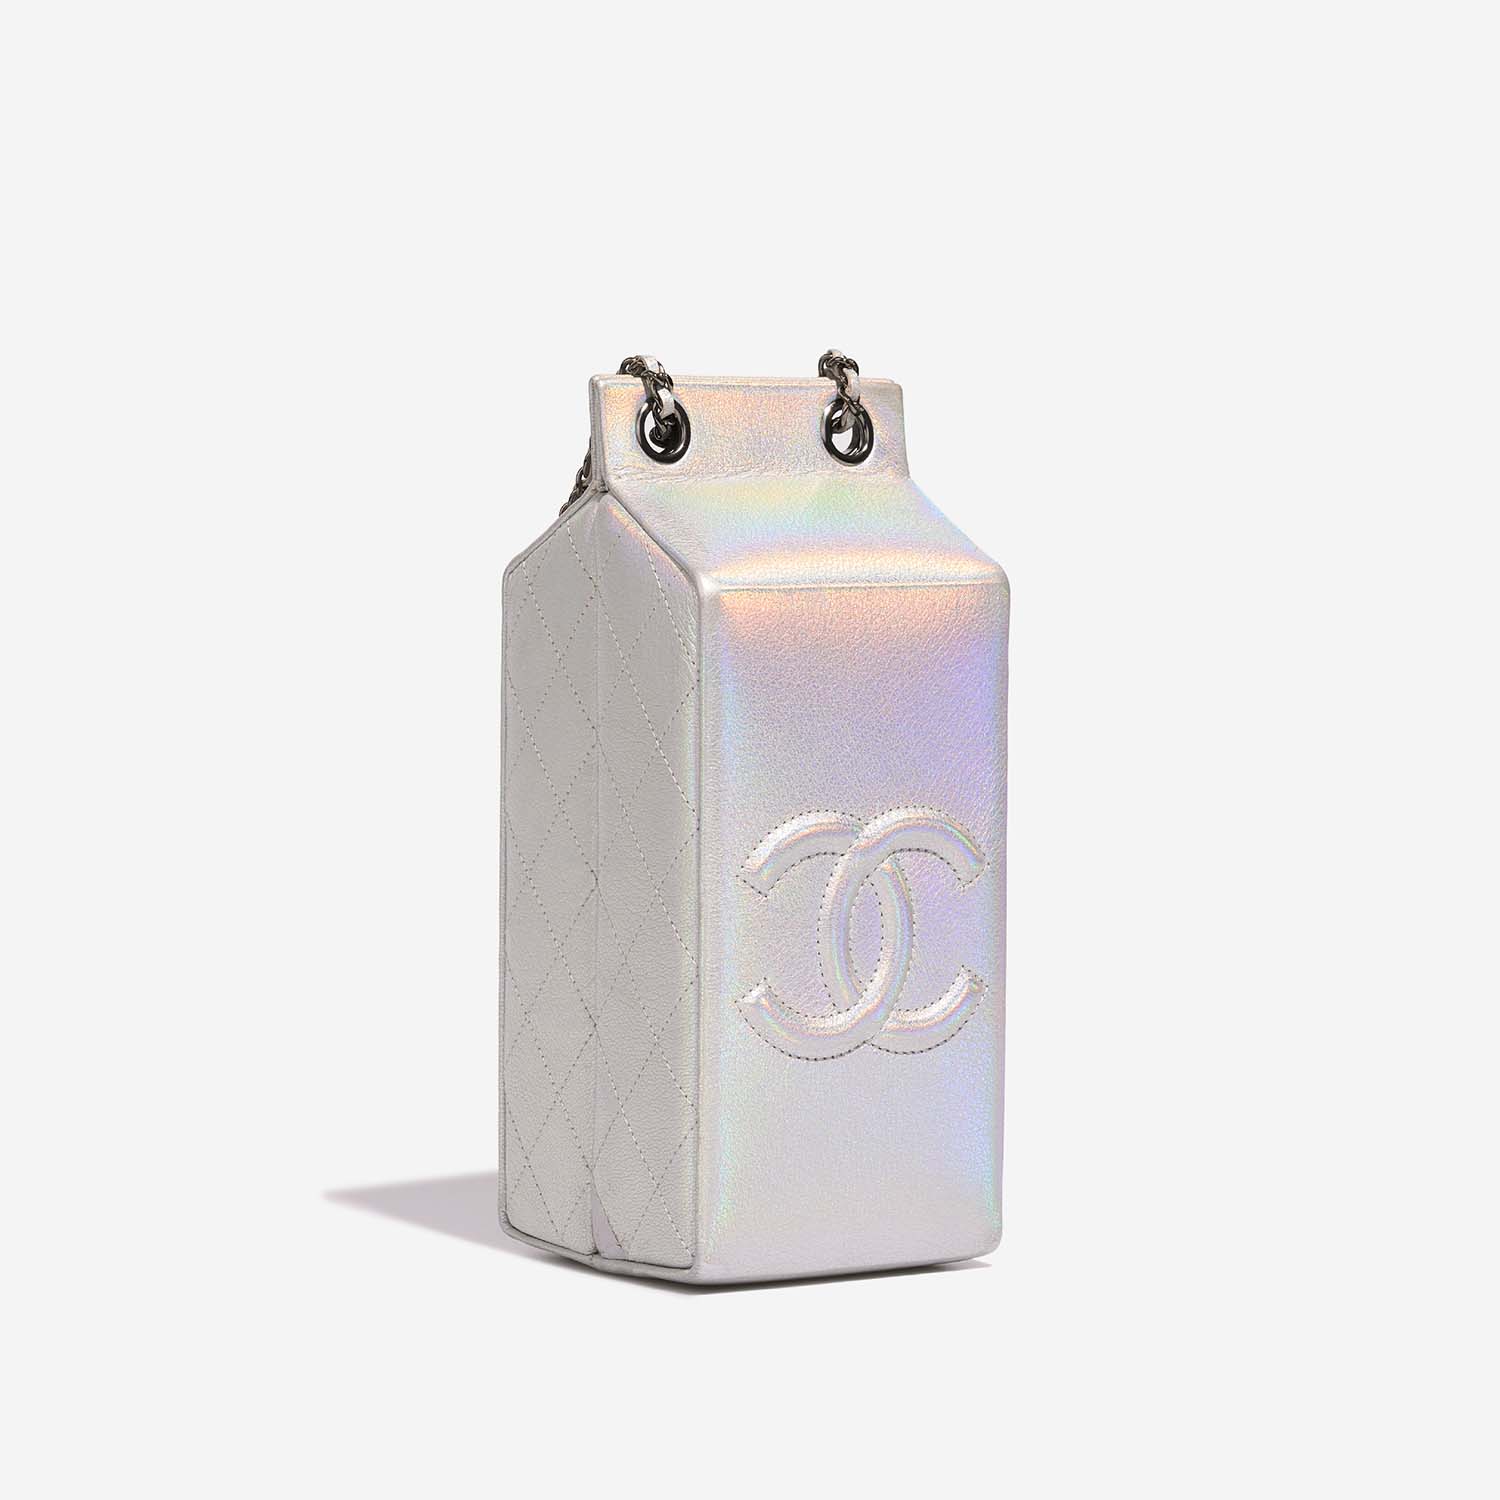 Chanel MilkCarton Silver Side Back | Verkaufen Sie Ihre Designer-Tasche auf Saclab.com